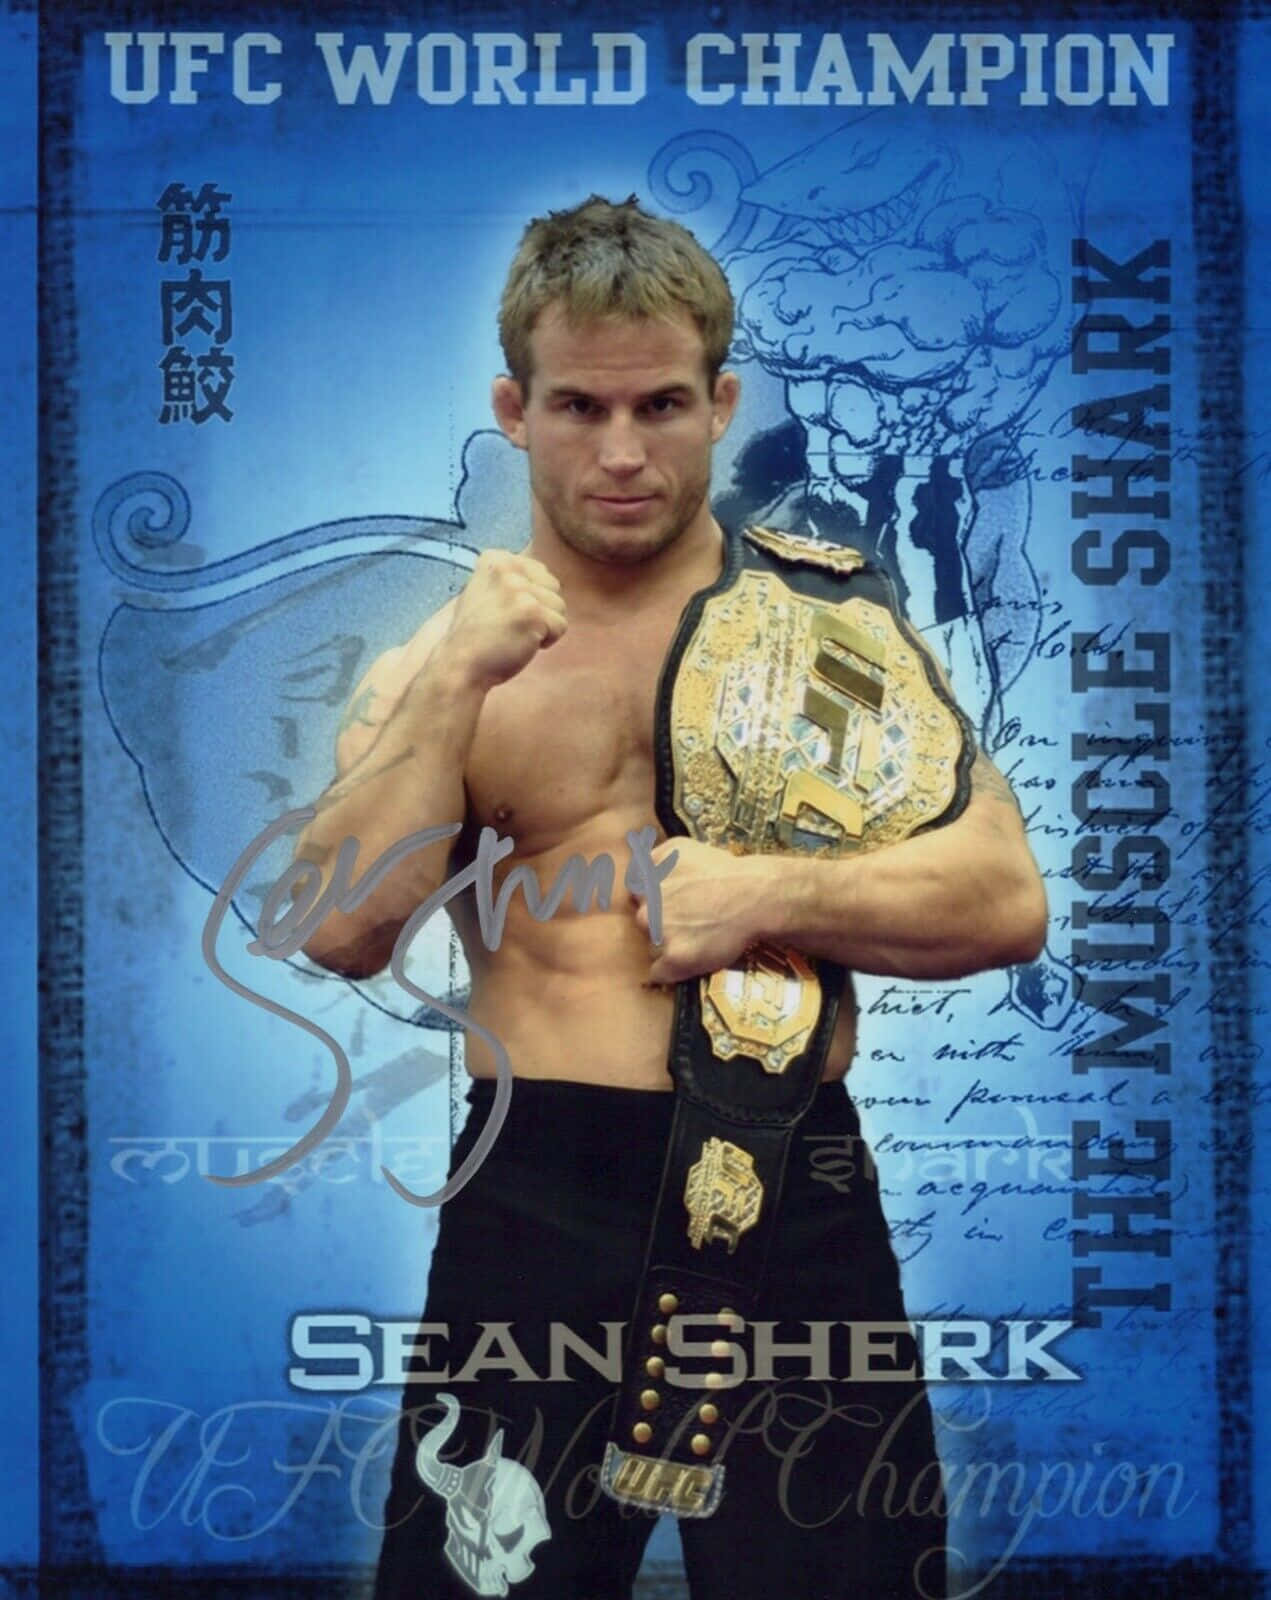 Determination Personified - Sean Sherk, Ex-UFC World Champion Wallpaper